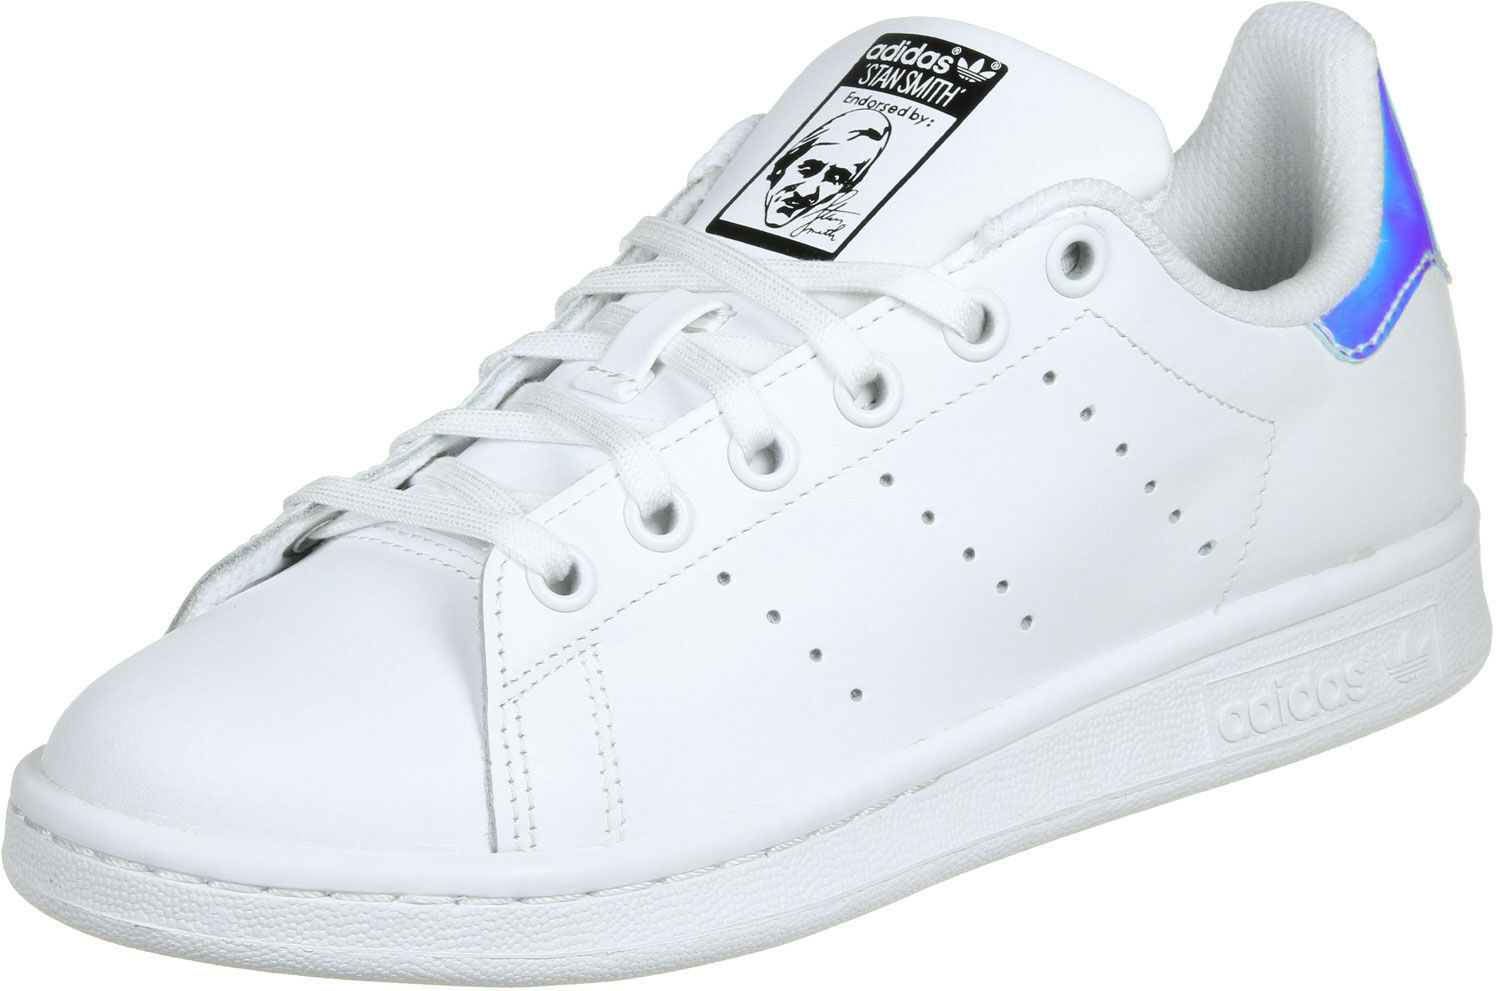 Adidas Stan Smith W ftwr white/metallic silver-solid/ftwr white